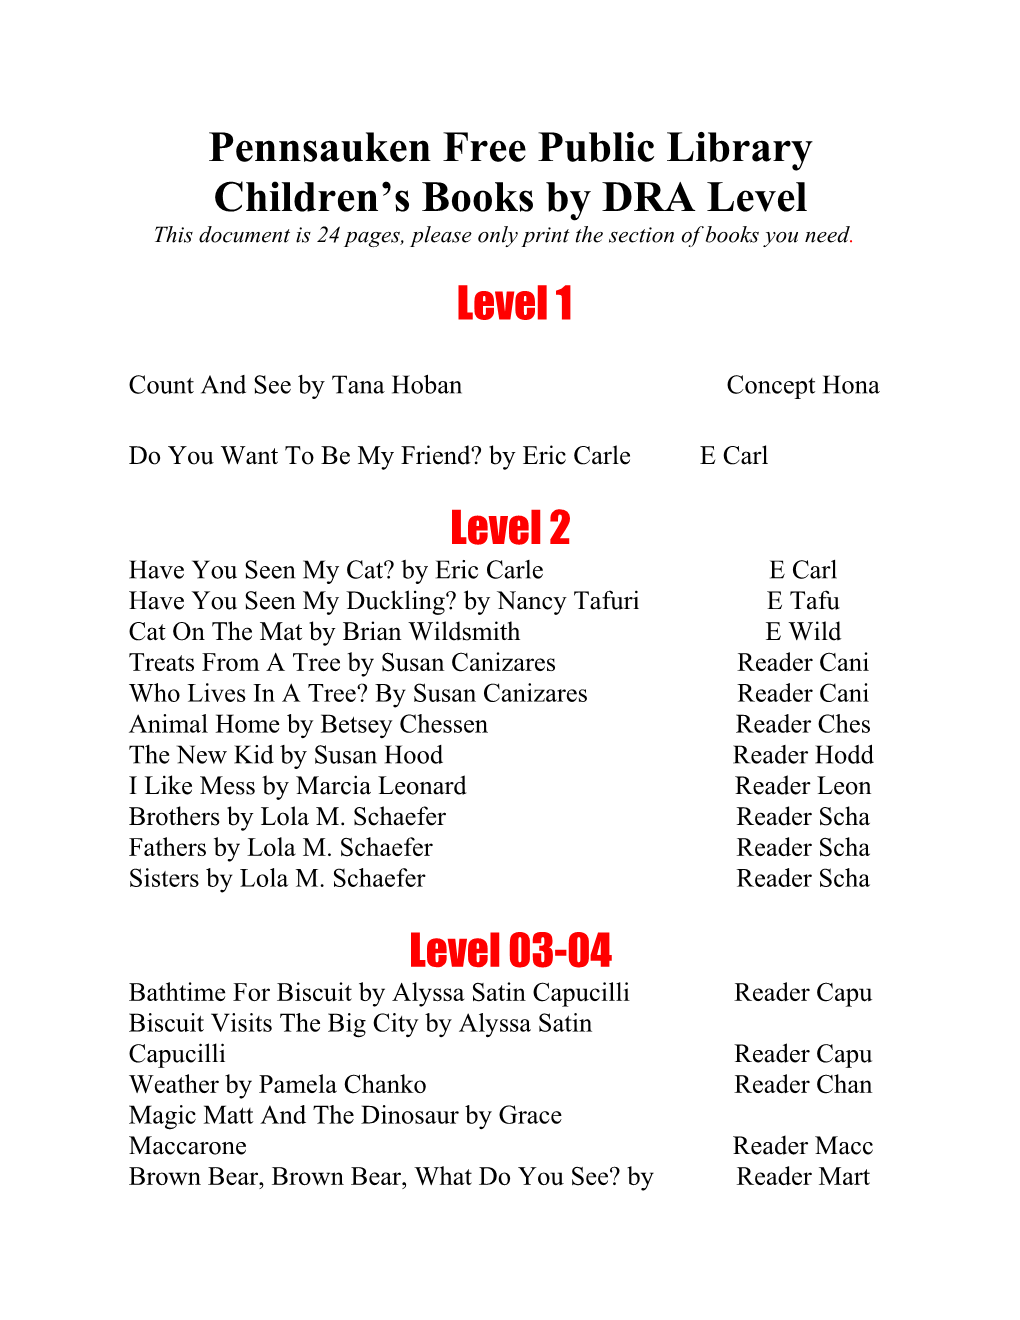 DRA Levels for Pennsauken Free Public Library Books